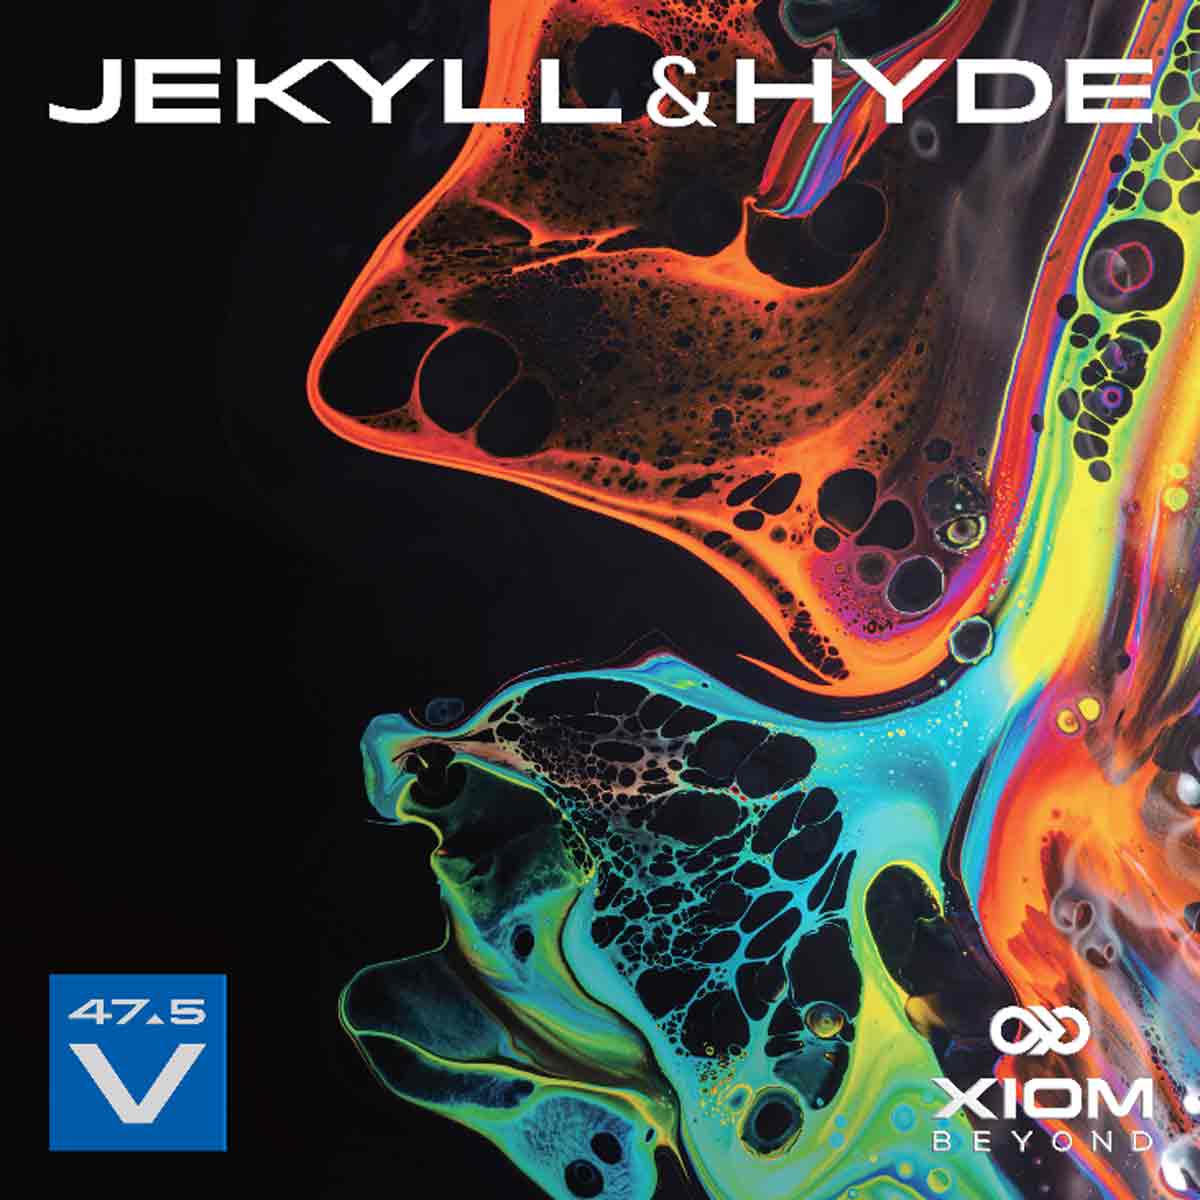 Xiom Belag Jekyll & Hyde V47.5 schwarz 2,3 mm